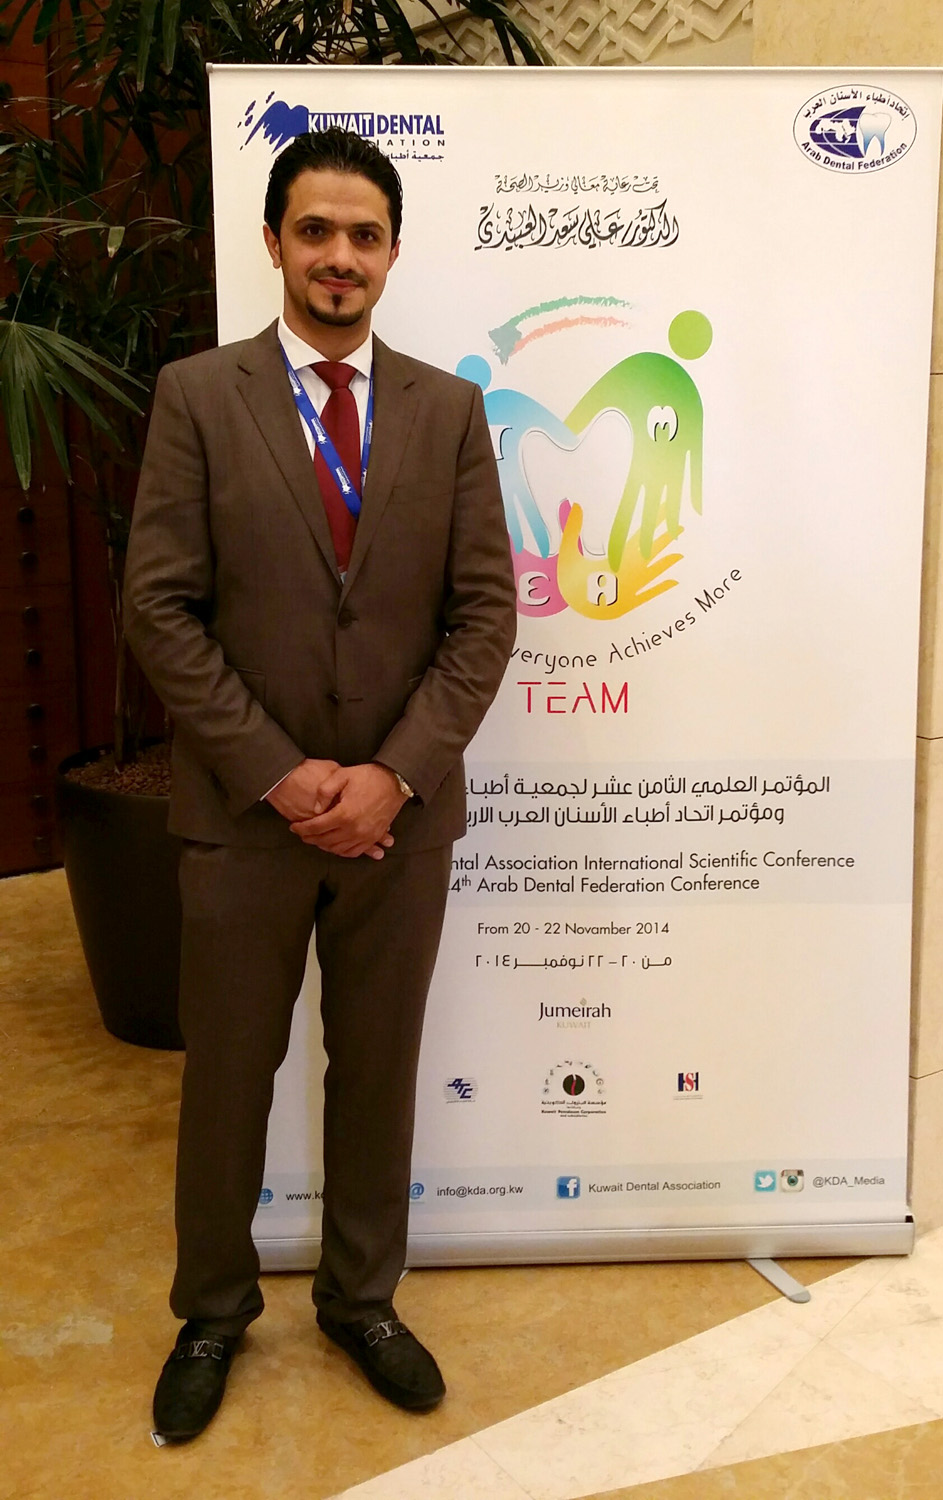 رئيس اللجنة العلمية للمؤتمر وامين صندوق جمعية اطباء الاسنان الكويتية الدكتور محمد دشتي